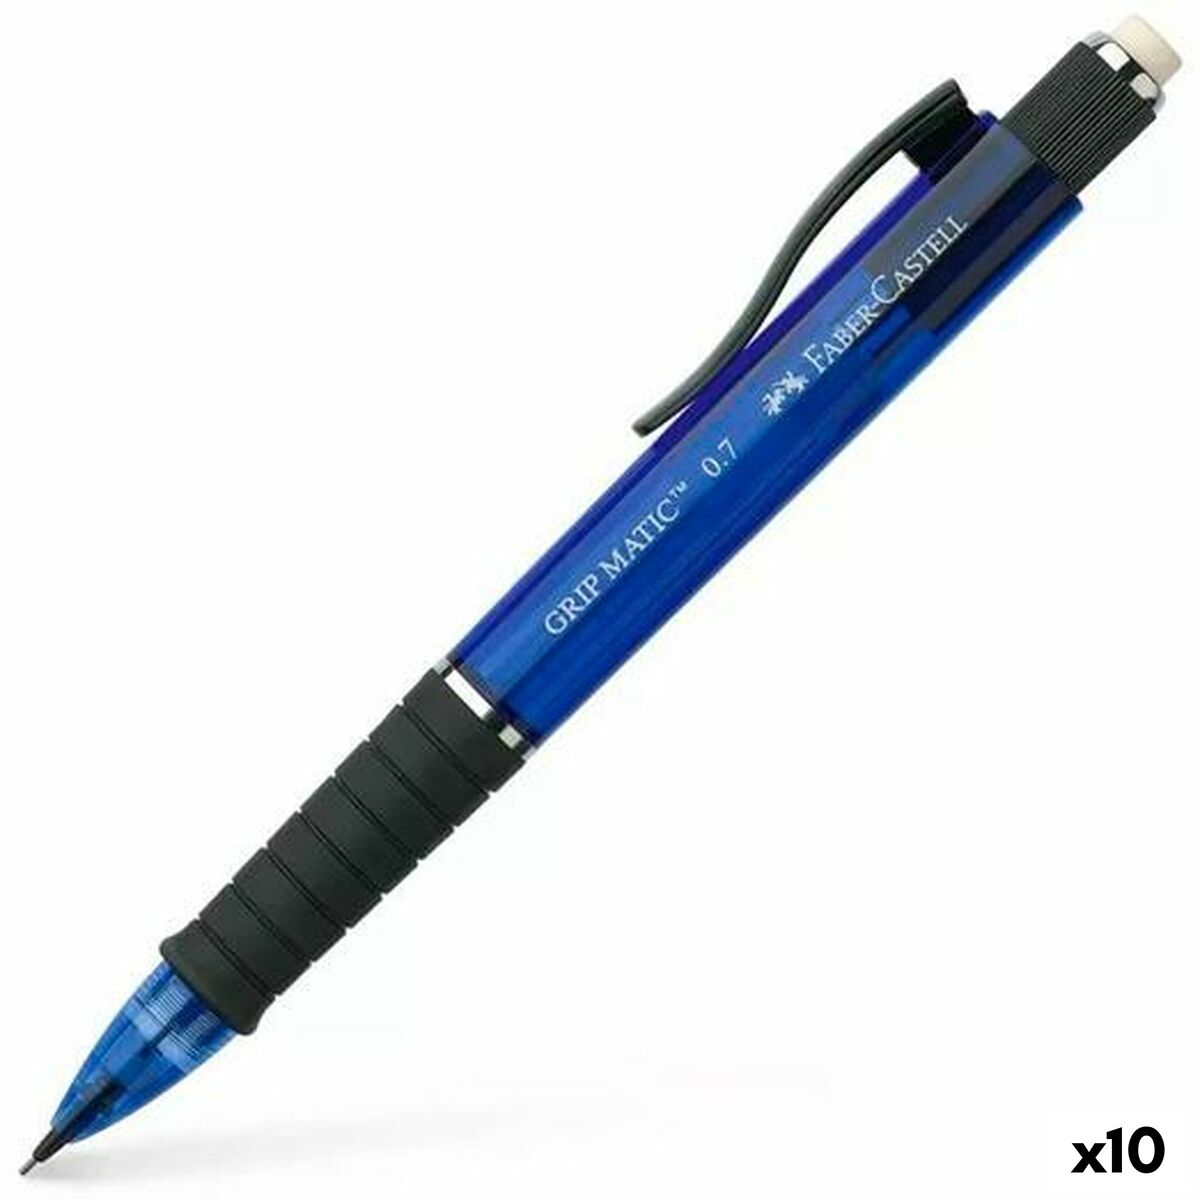 Creion mecanic Faber-Castell Grip  Matic Albastru 0,7 mm (10 Unități)